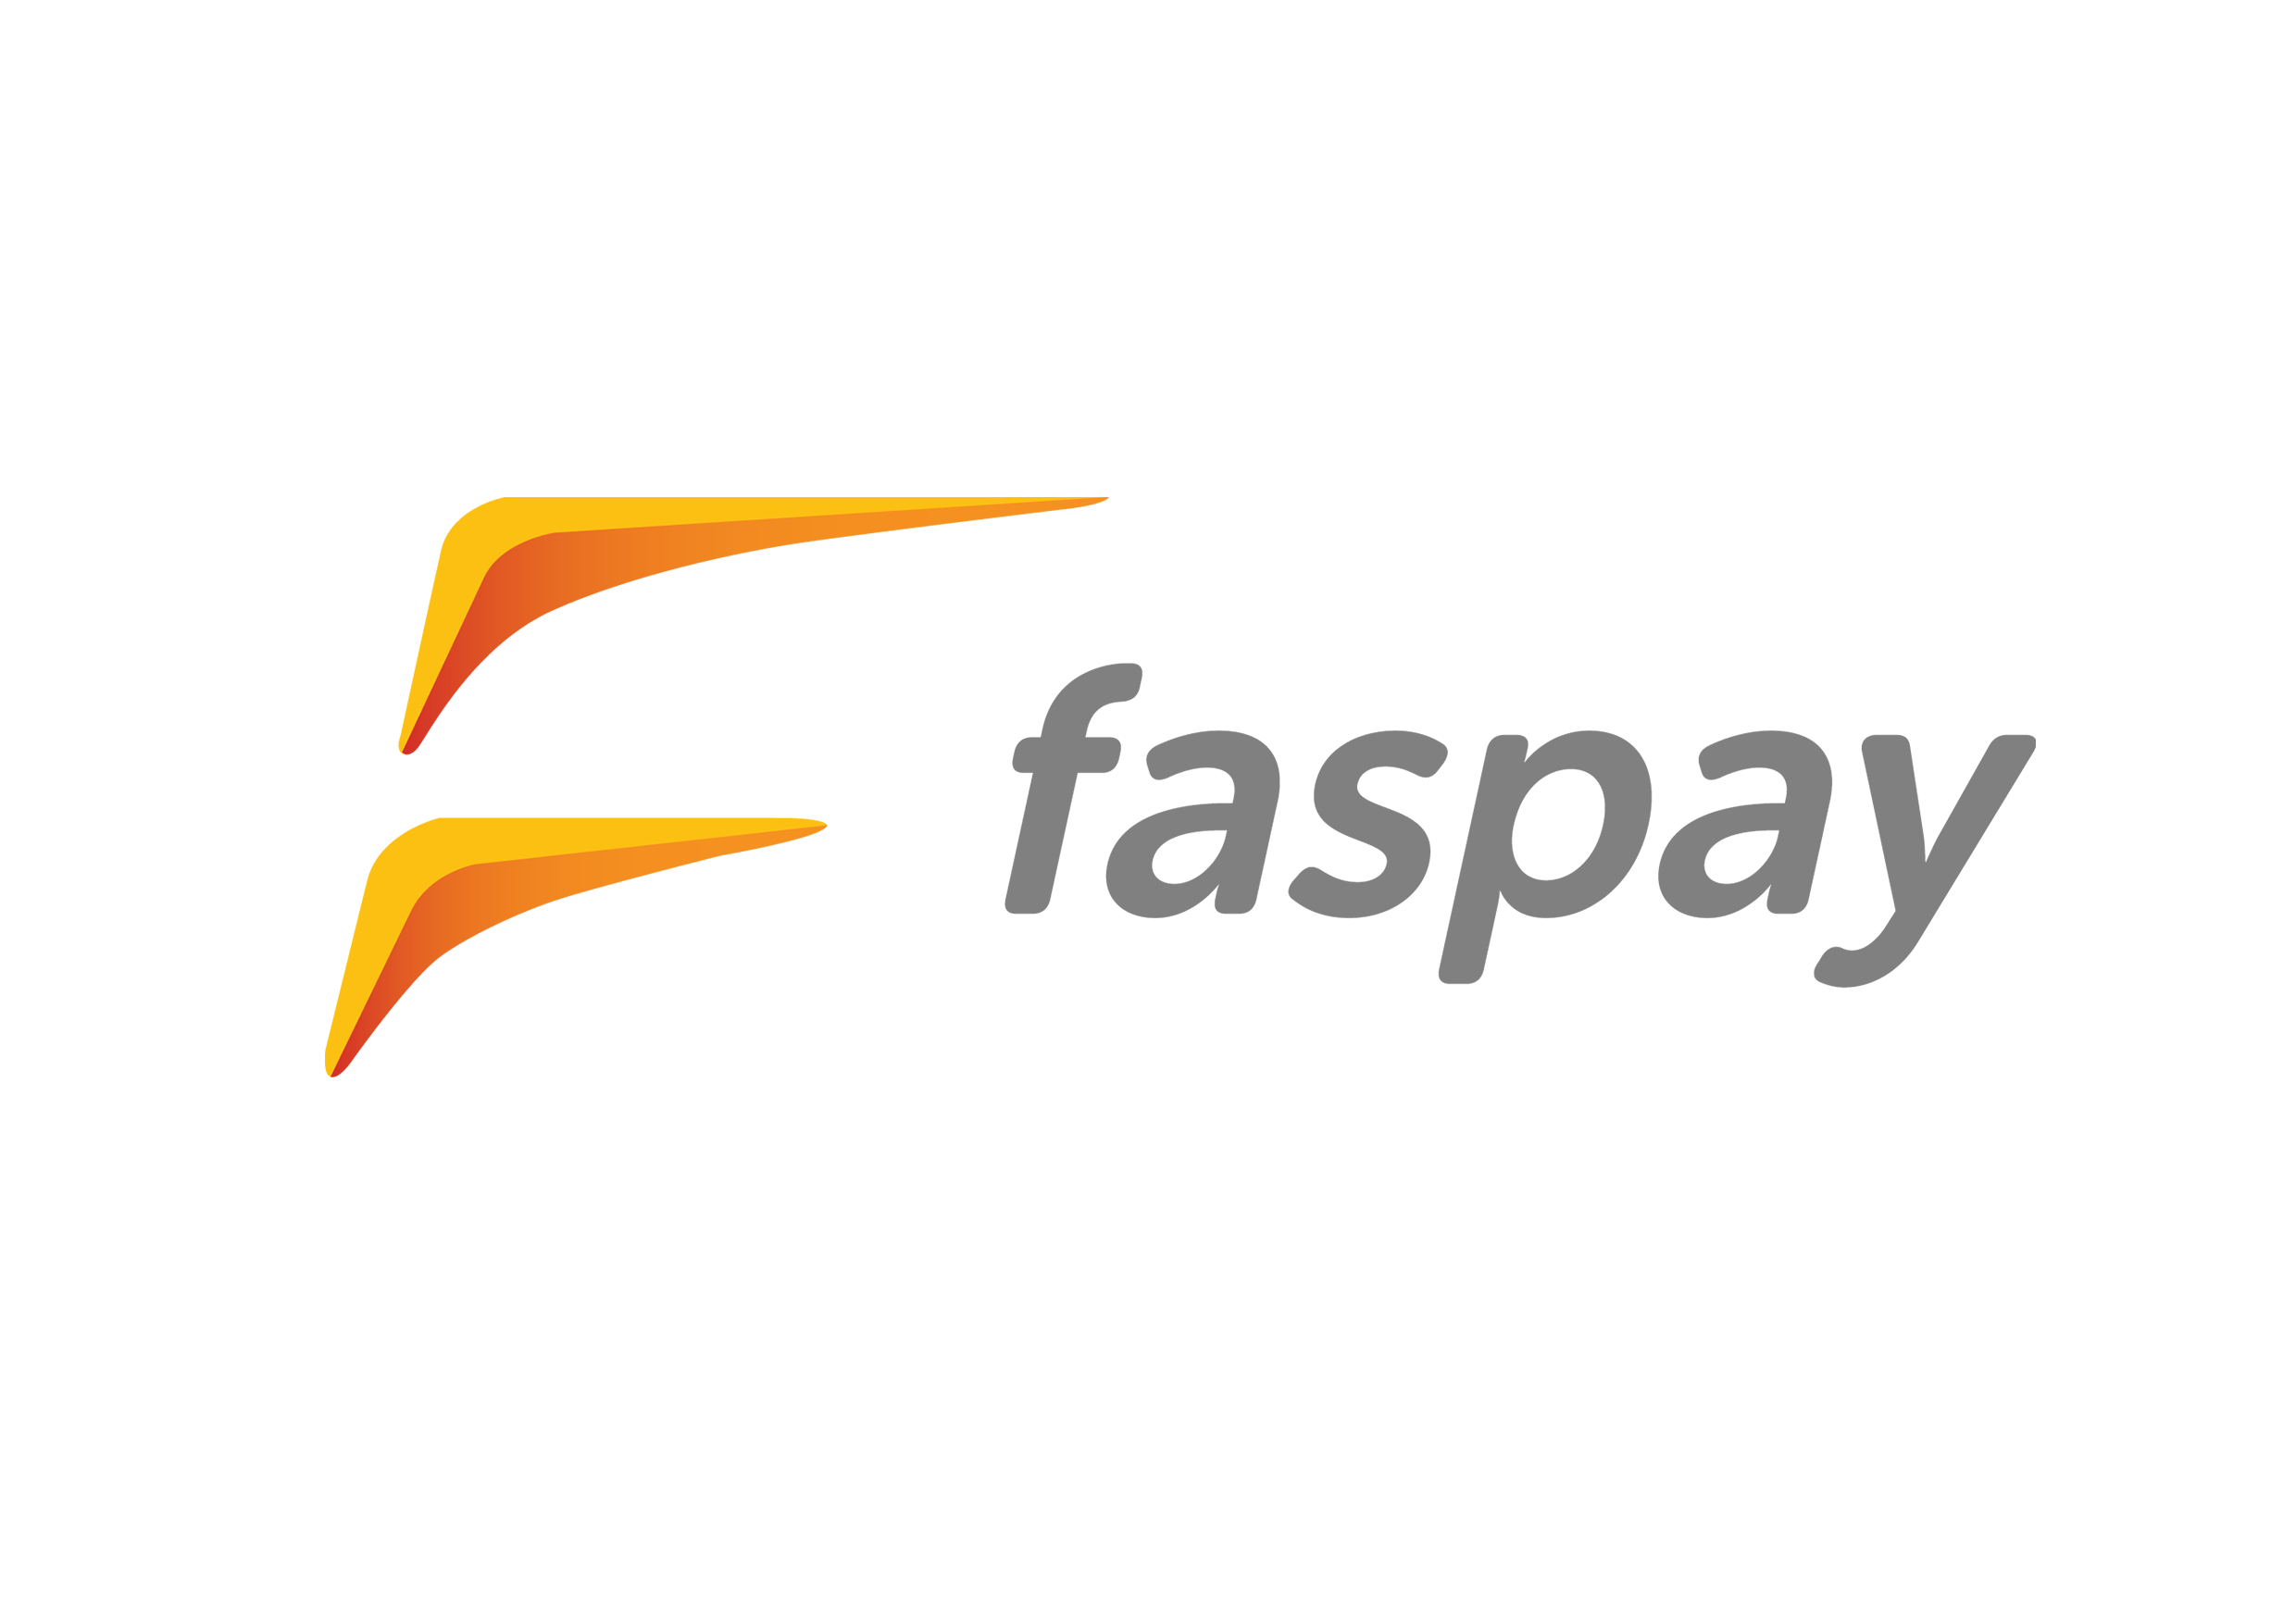 Payment gateway Faspay meresmikan tiga inovasi terbaru, yakni Faspay Dana saha, API Faspay Billing, dan fasilitas tarik tunai di Alfa Group